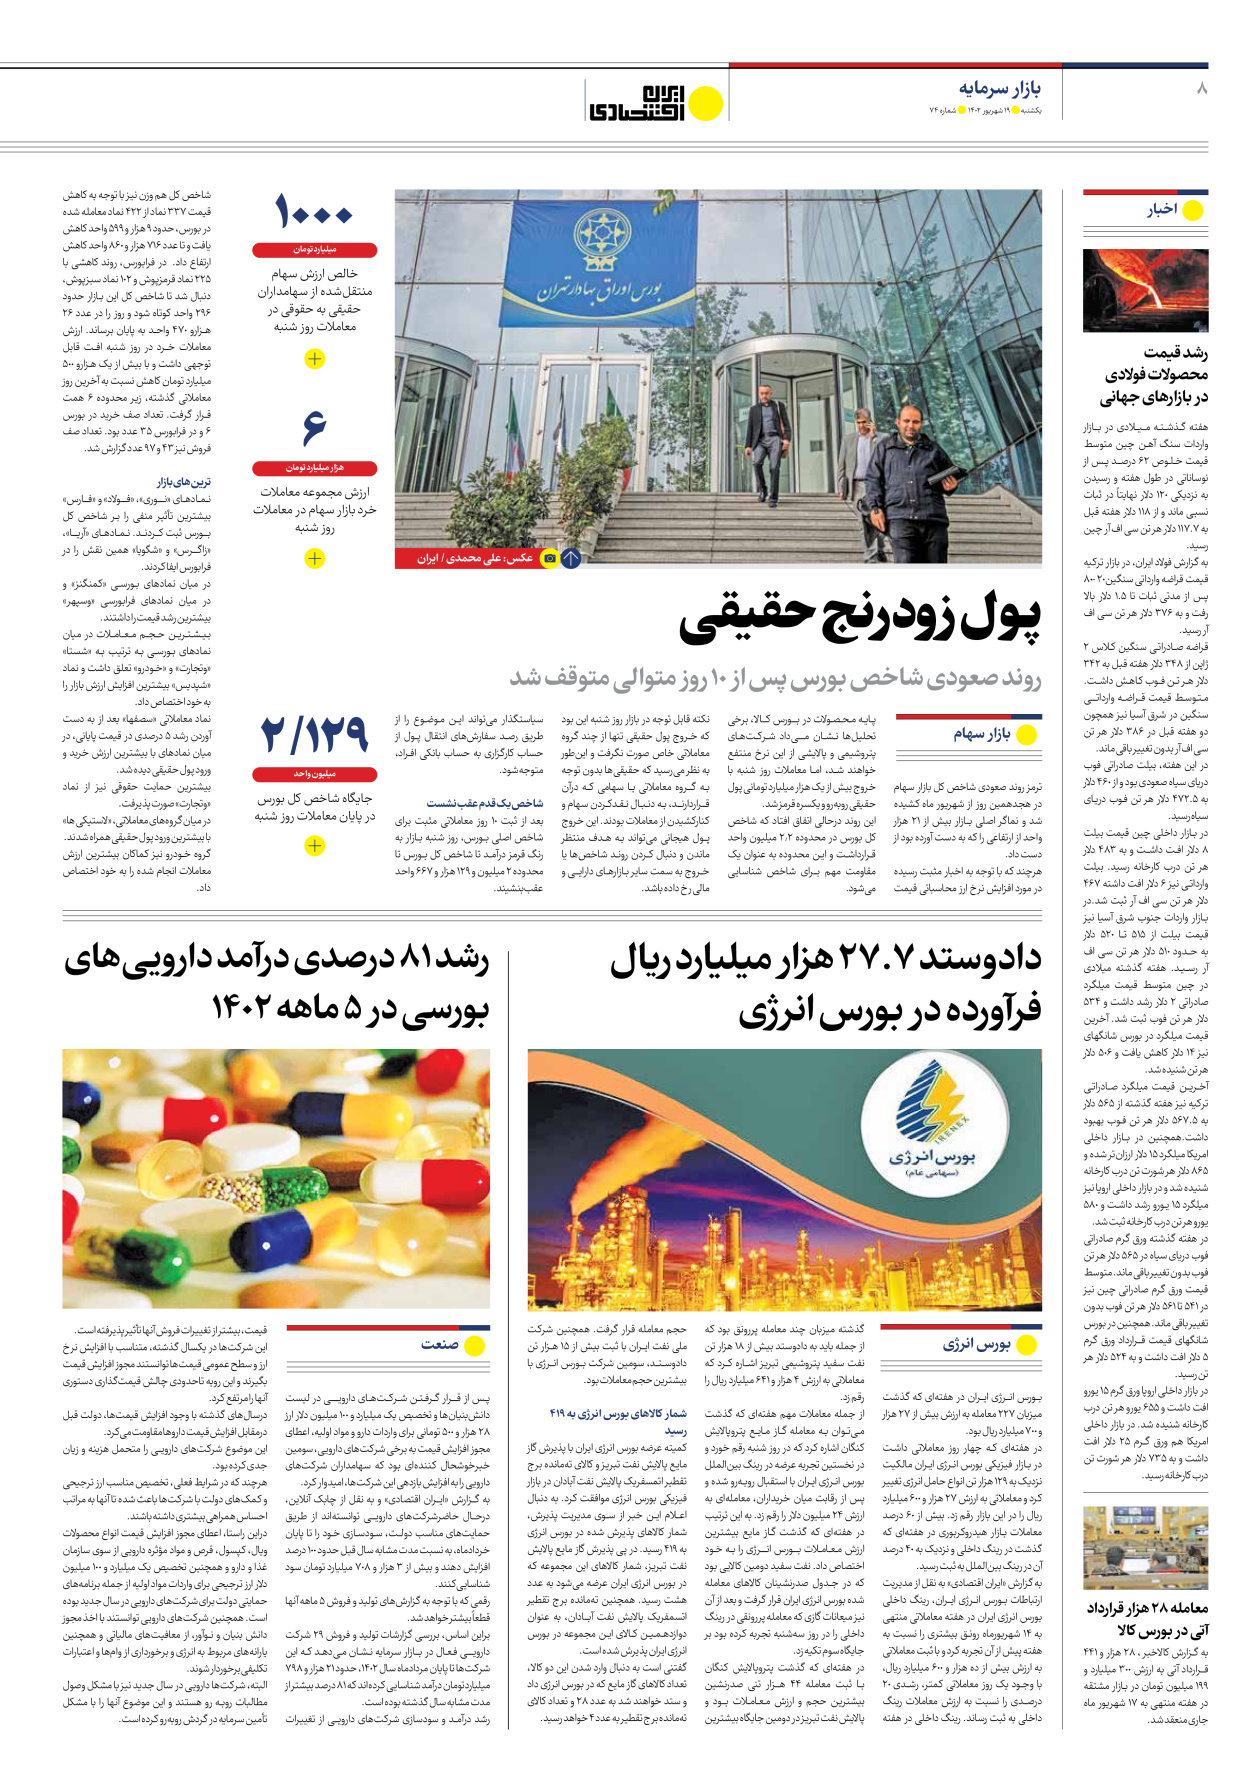 روزنامه ایران اقتصادی - شماره هفتاد و چهار - ۱۹ شهریور ۱۴۰۲ - صفحه ۸